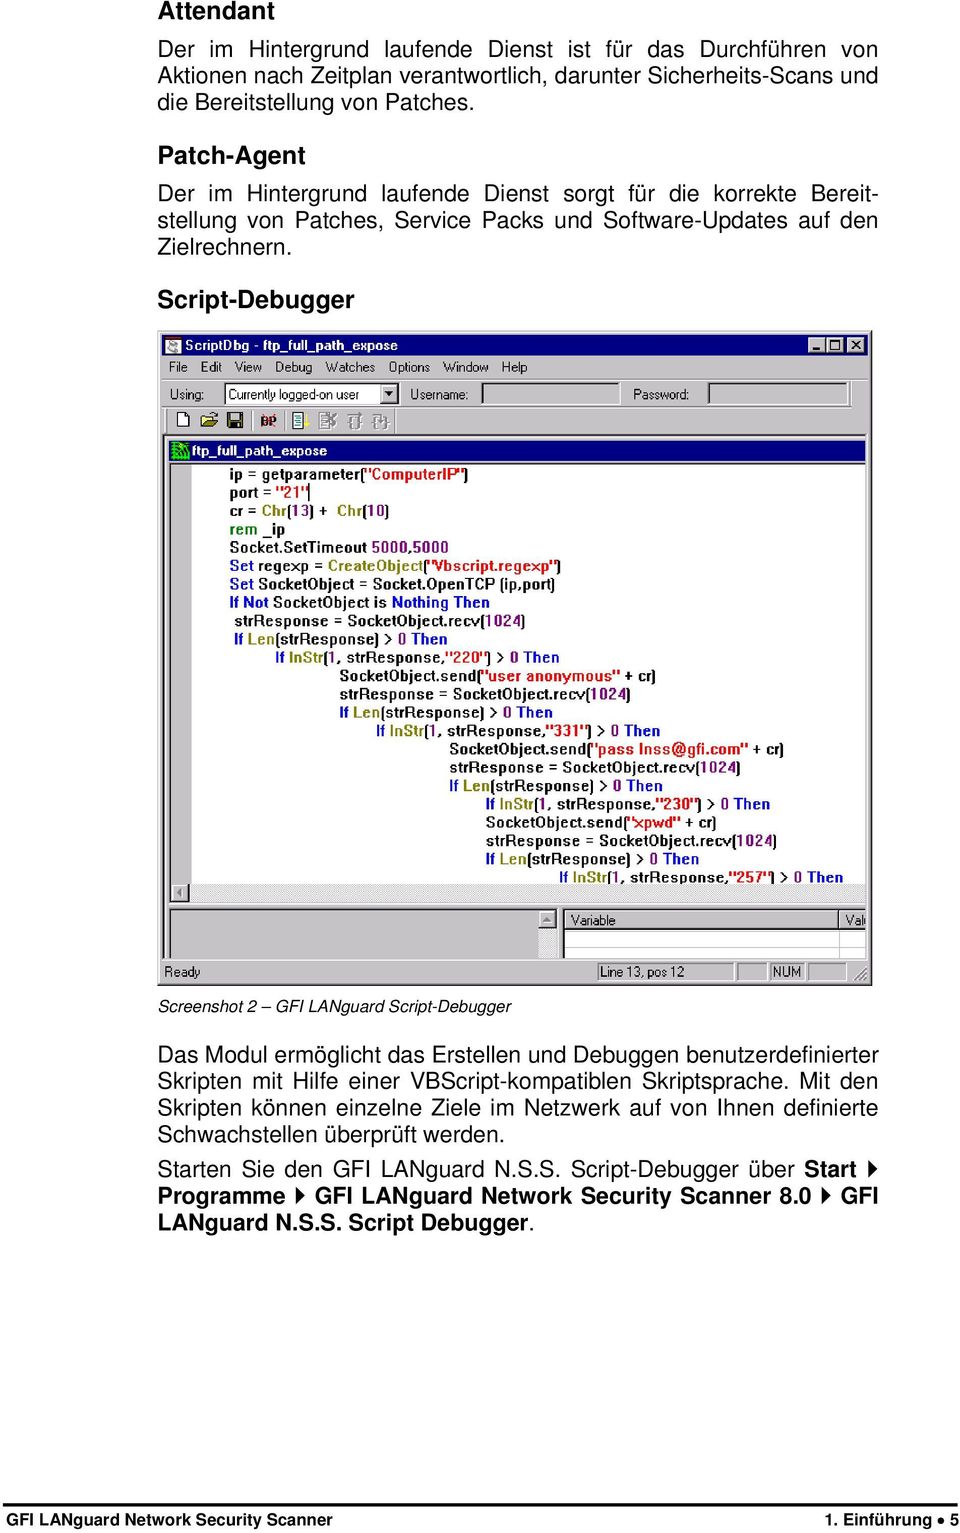 Script-Debugger Screenshot 2 GFI LANguard Script-Debugger Das Modul ermöglicht das Erstellen und Debuggen benutzerdefinierter Skripten mit Hilfe einer VBScript-kompatiblen Skriptsprache.